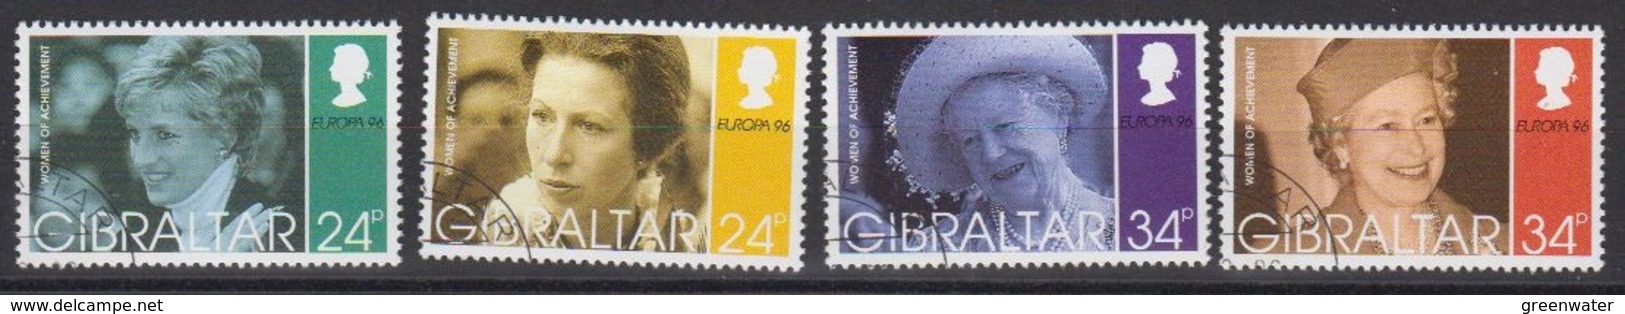 Europa Cept 1996 Gibraltar 4v Used (44914) - 1996